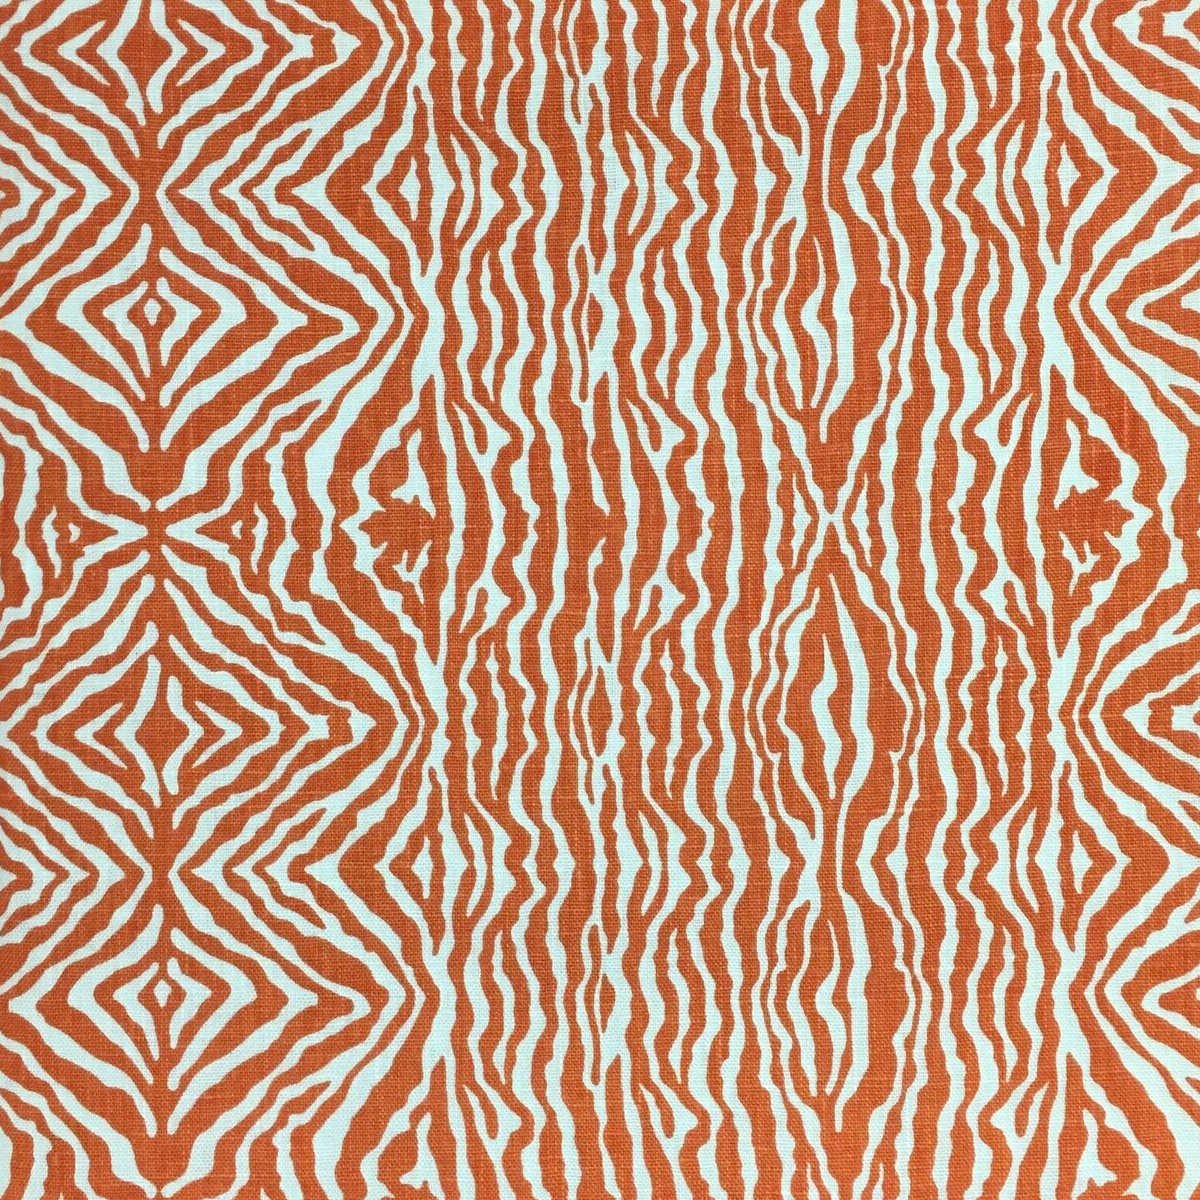 zebra stripe wallpaper,pattern,orange,line,pattern,design